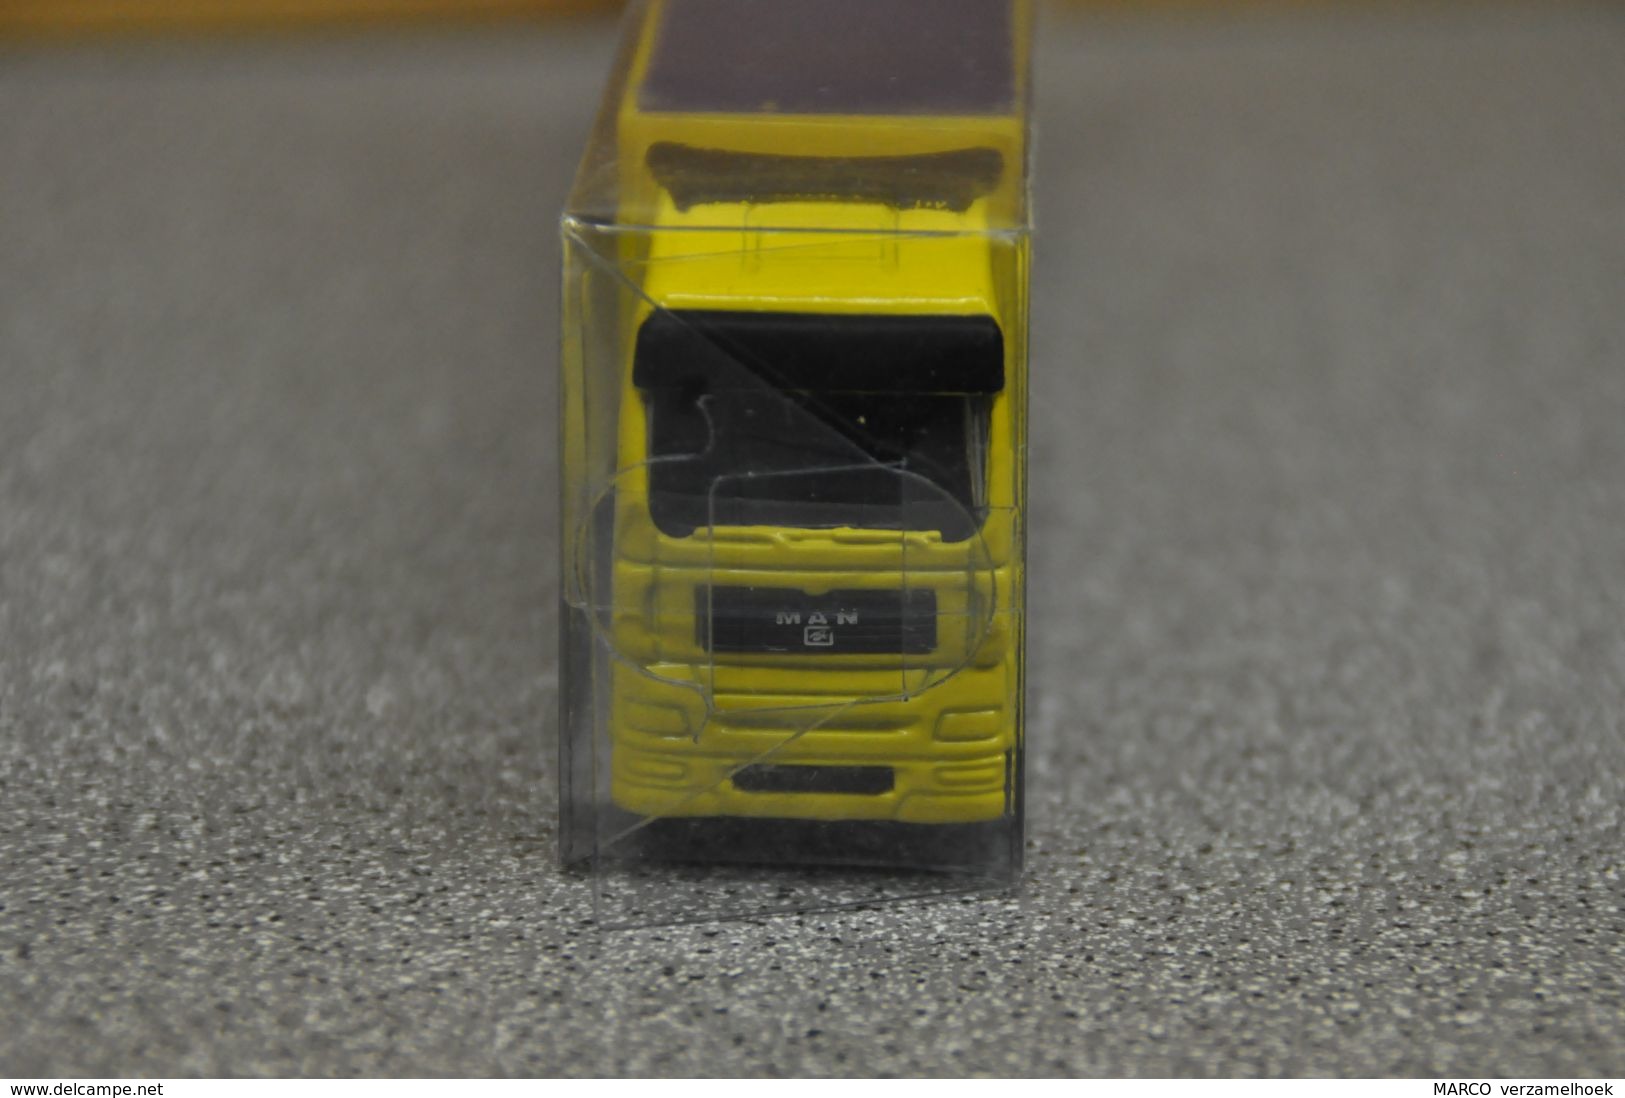 Top 1 Toys Scale 1:87 MAN - Camiones, Buses Y Construcción